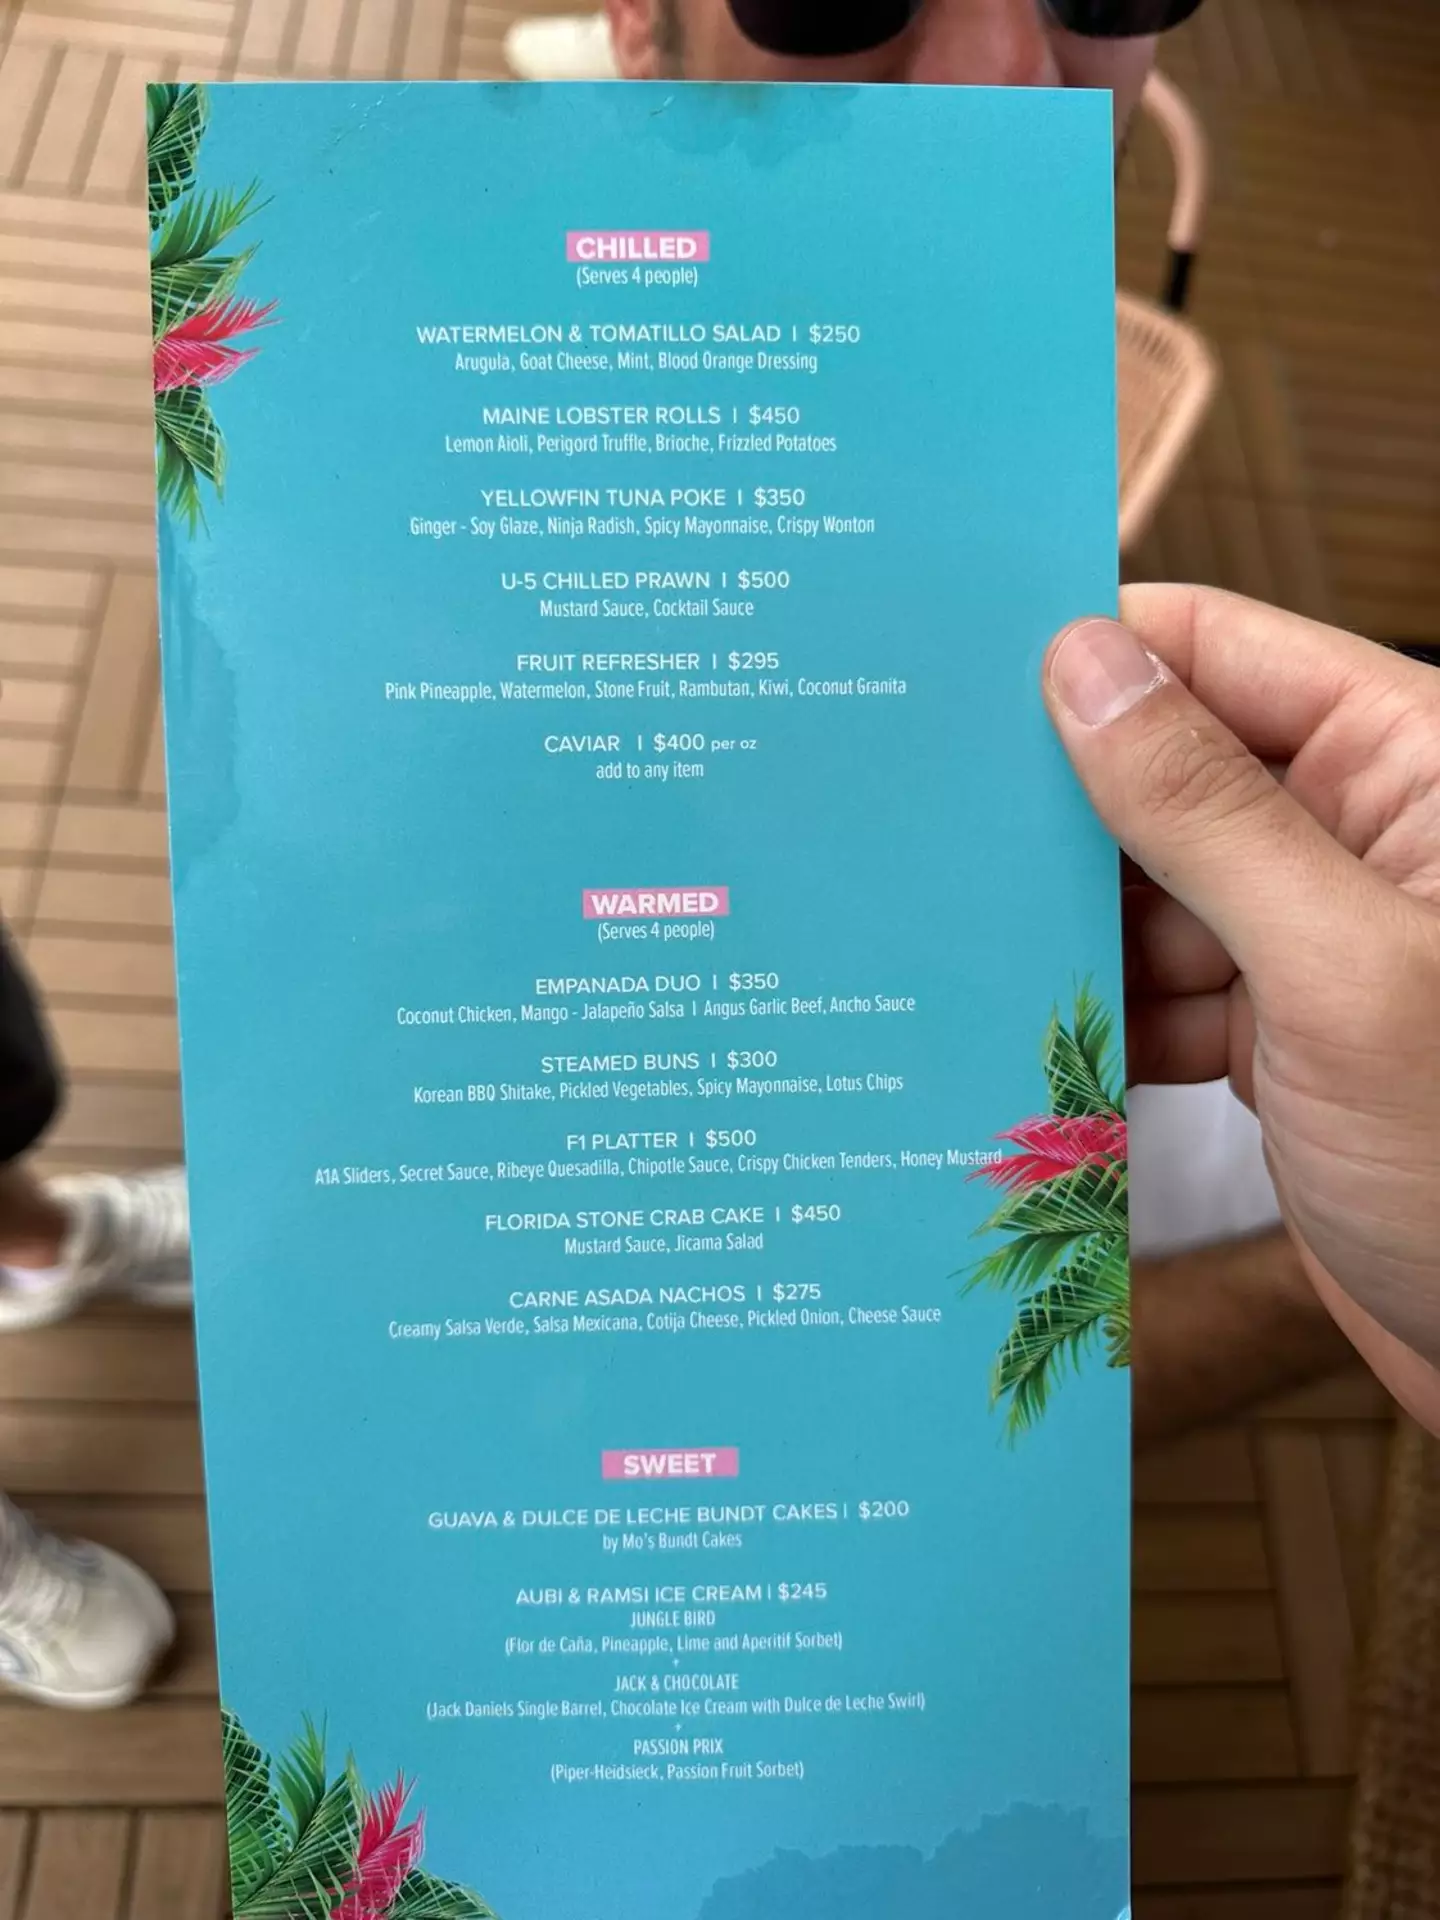 The food menu this weekend in Miami.